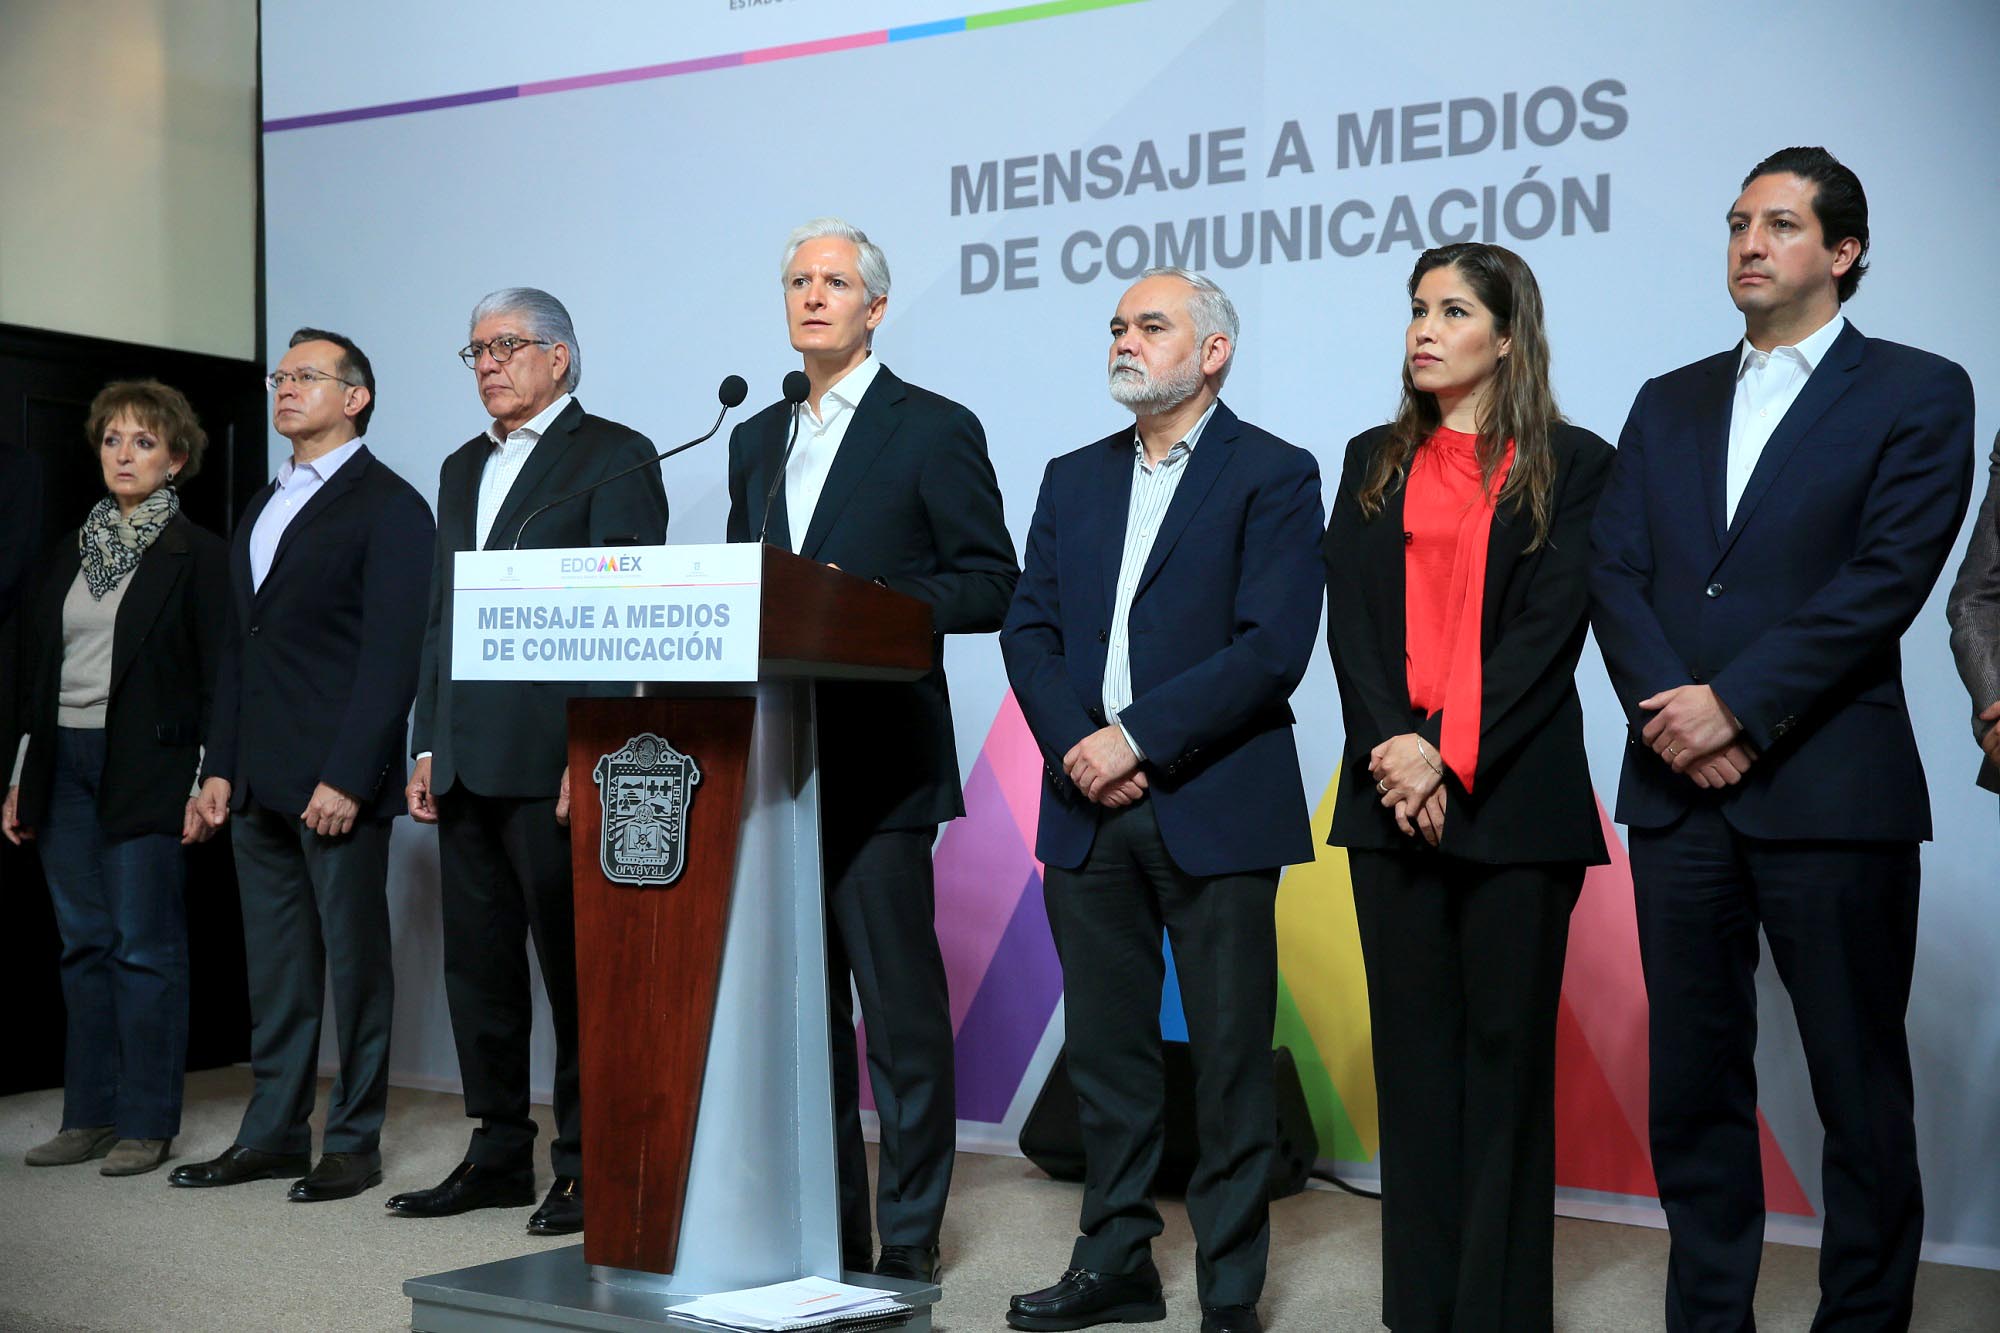 Alfredo del Mazo anuncia suspensión de eventos masivos e inversión en equipo médico contra el COVID-19 #regionmx